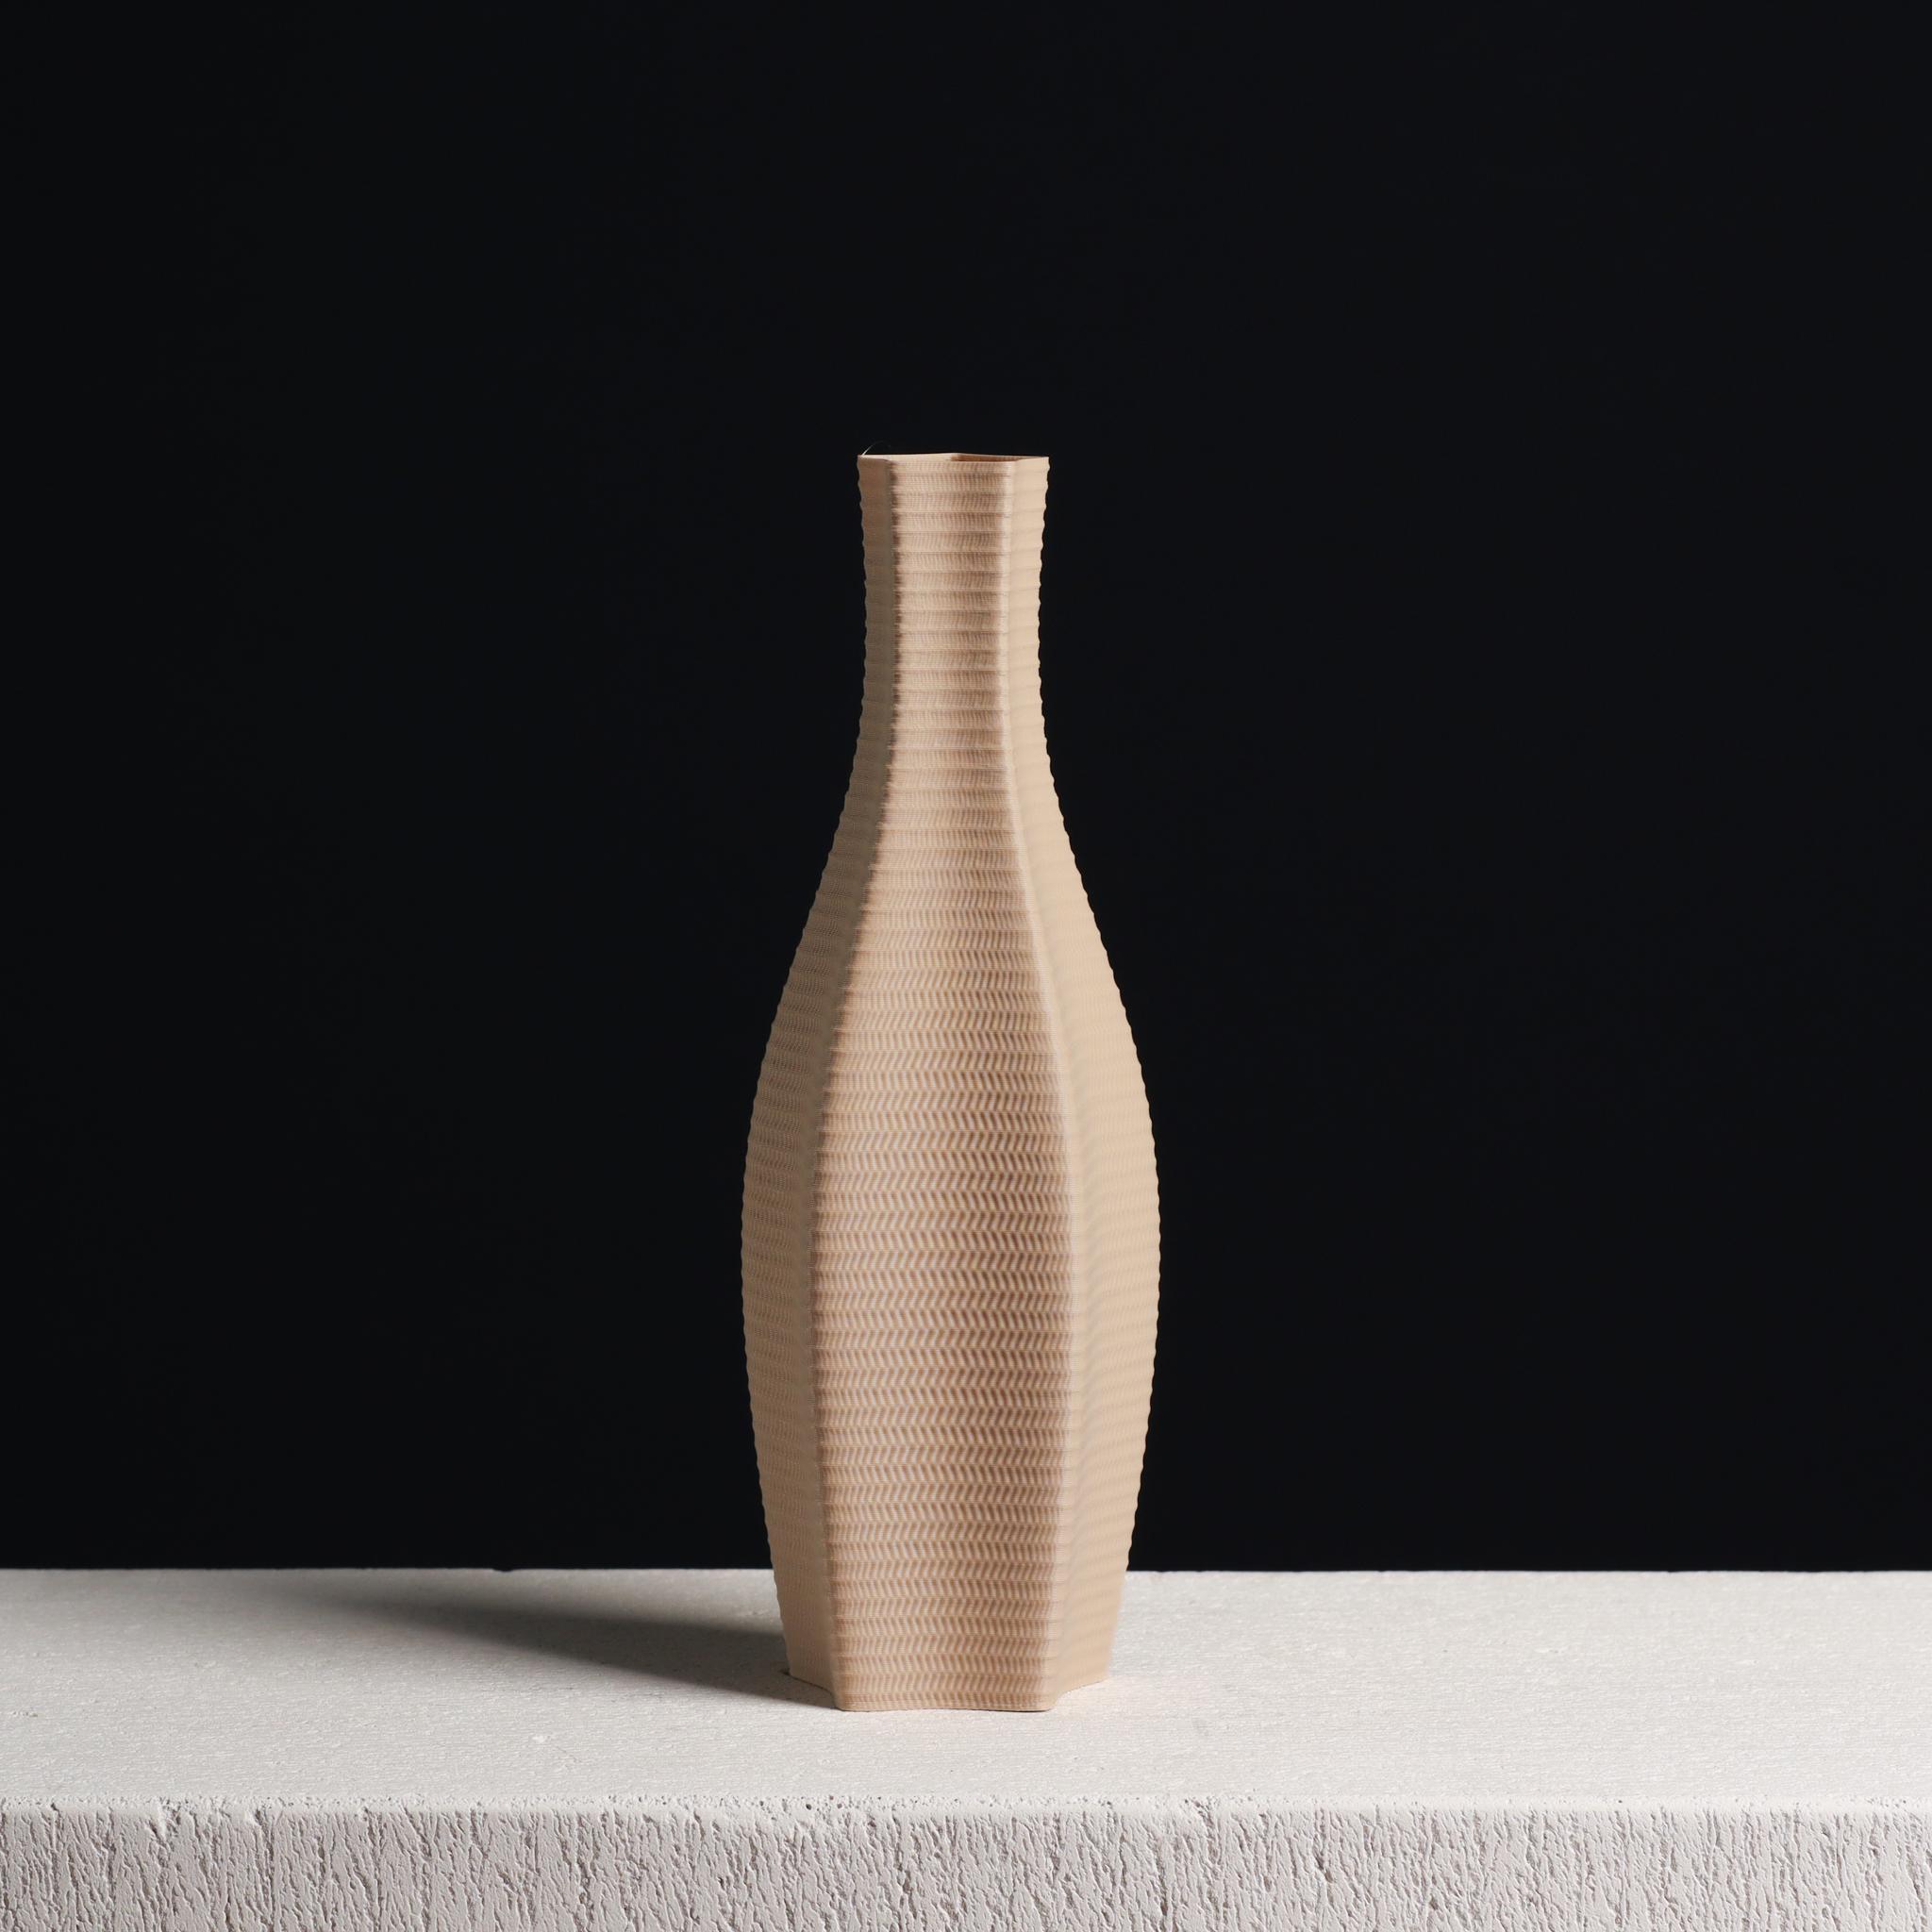  Wickered Vase (Vase Mode)  3d model